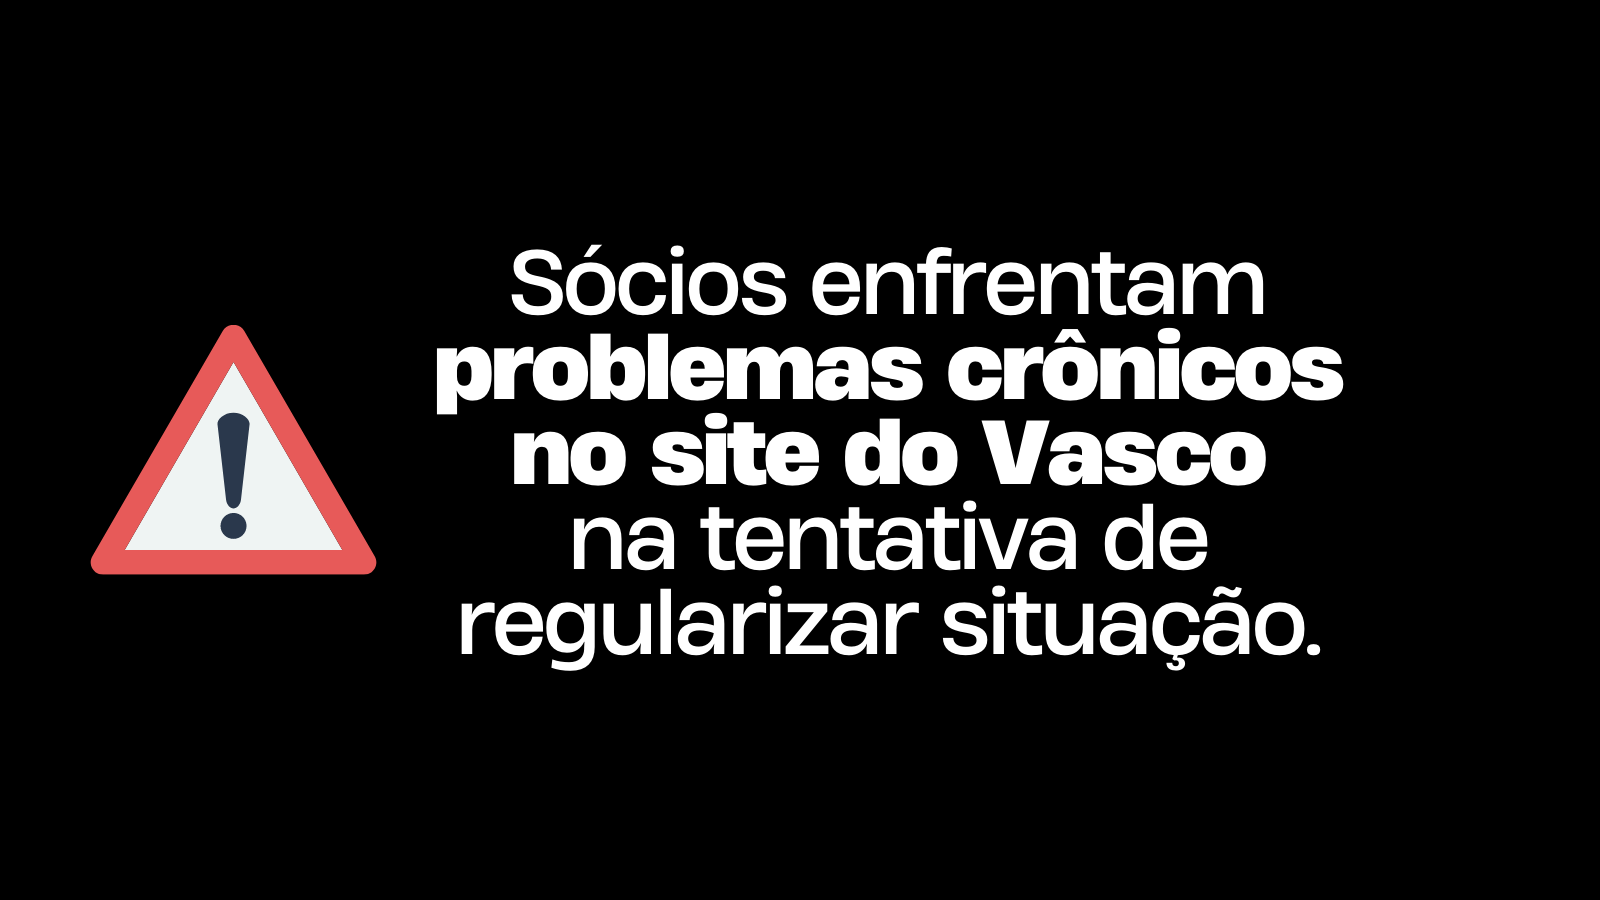 Sócios enfrentam problemas crônicos no site do Vasco ao tentar regularizar situação